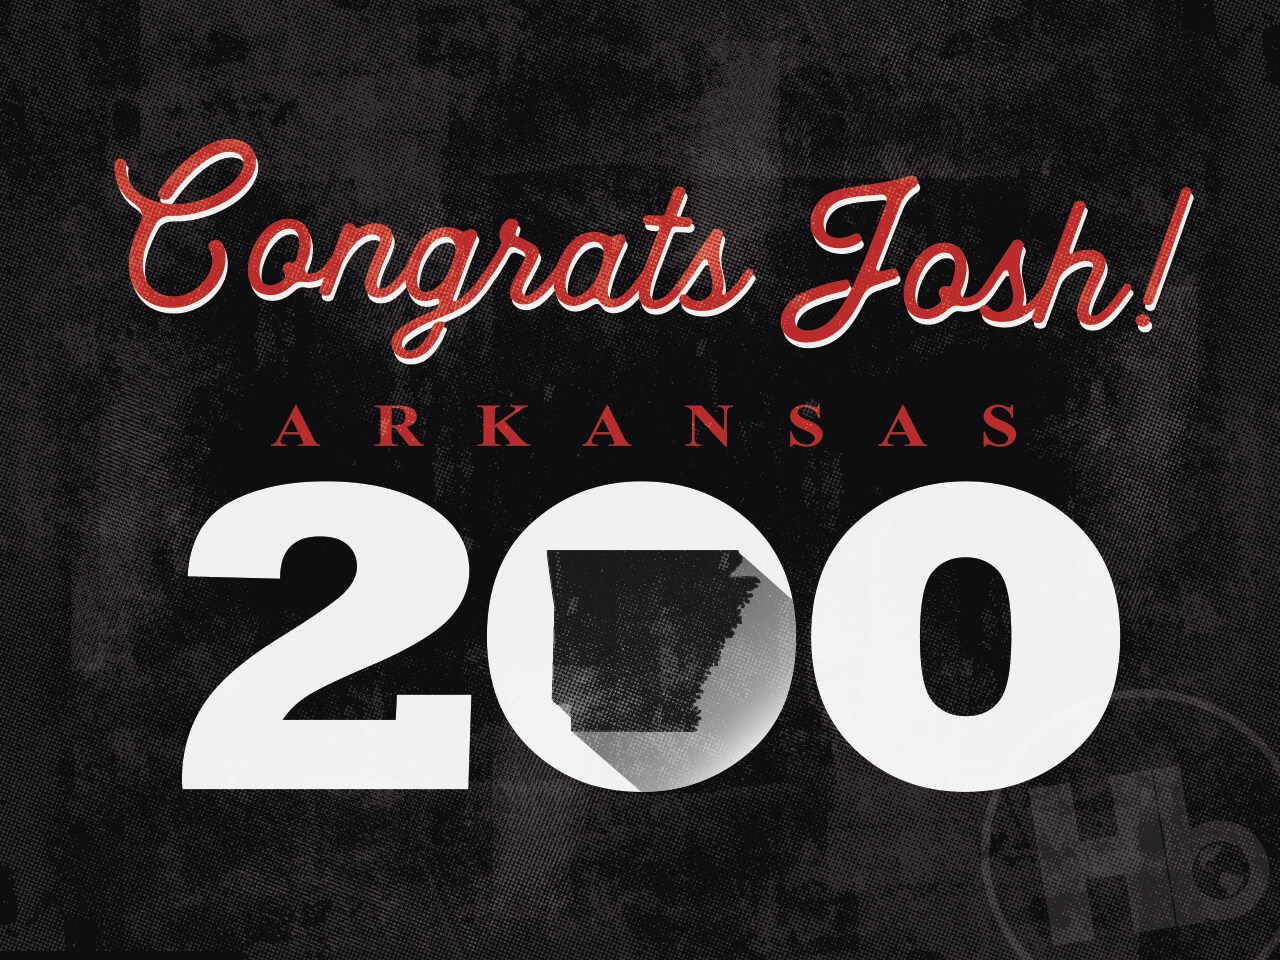 HB congratulates the Arkansas 200